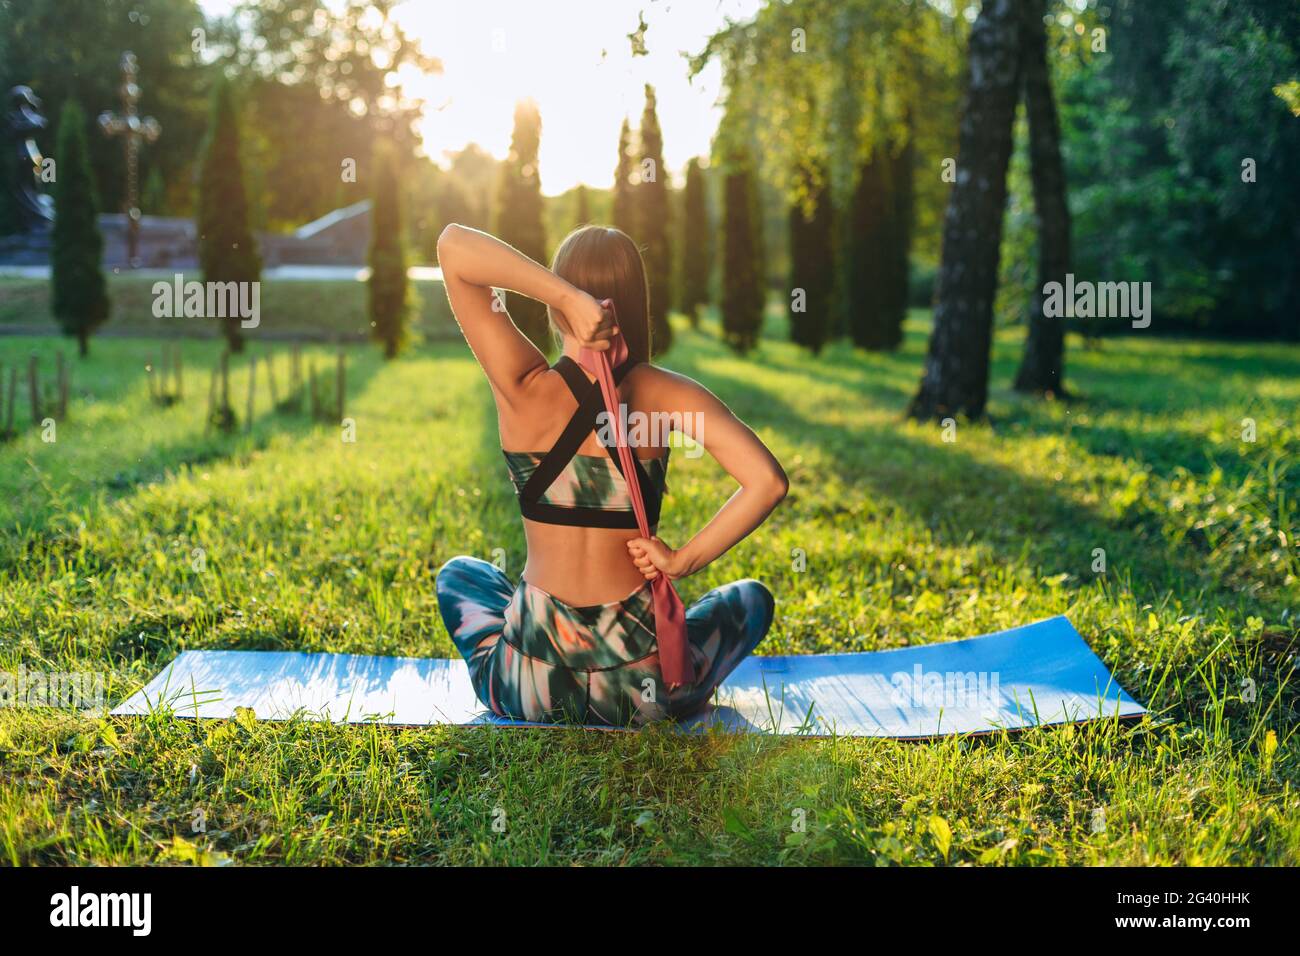 Das Konzept eines gesunden Lebensstils. Das Mädchen praktiziert Yoga auf einer Matte im Park. Fitness-Gummiband in den Händen eines jungen Athleten. Stockfoto